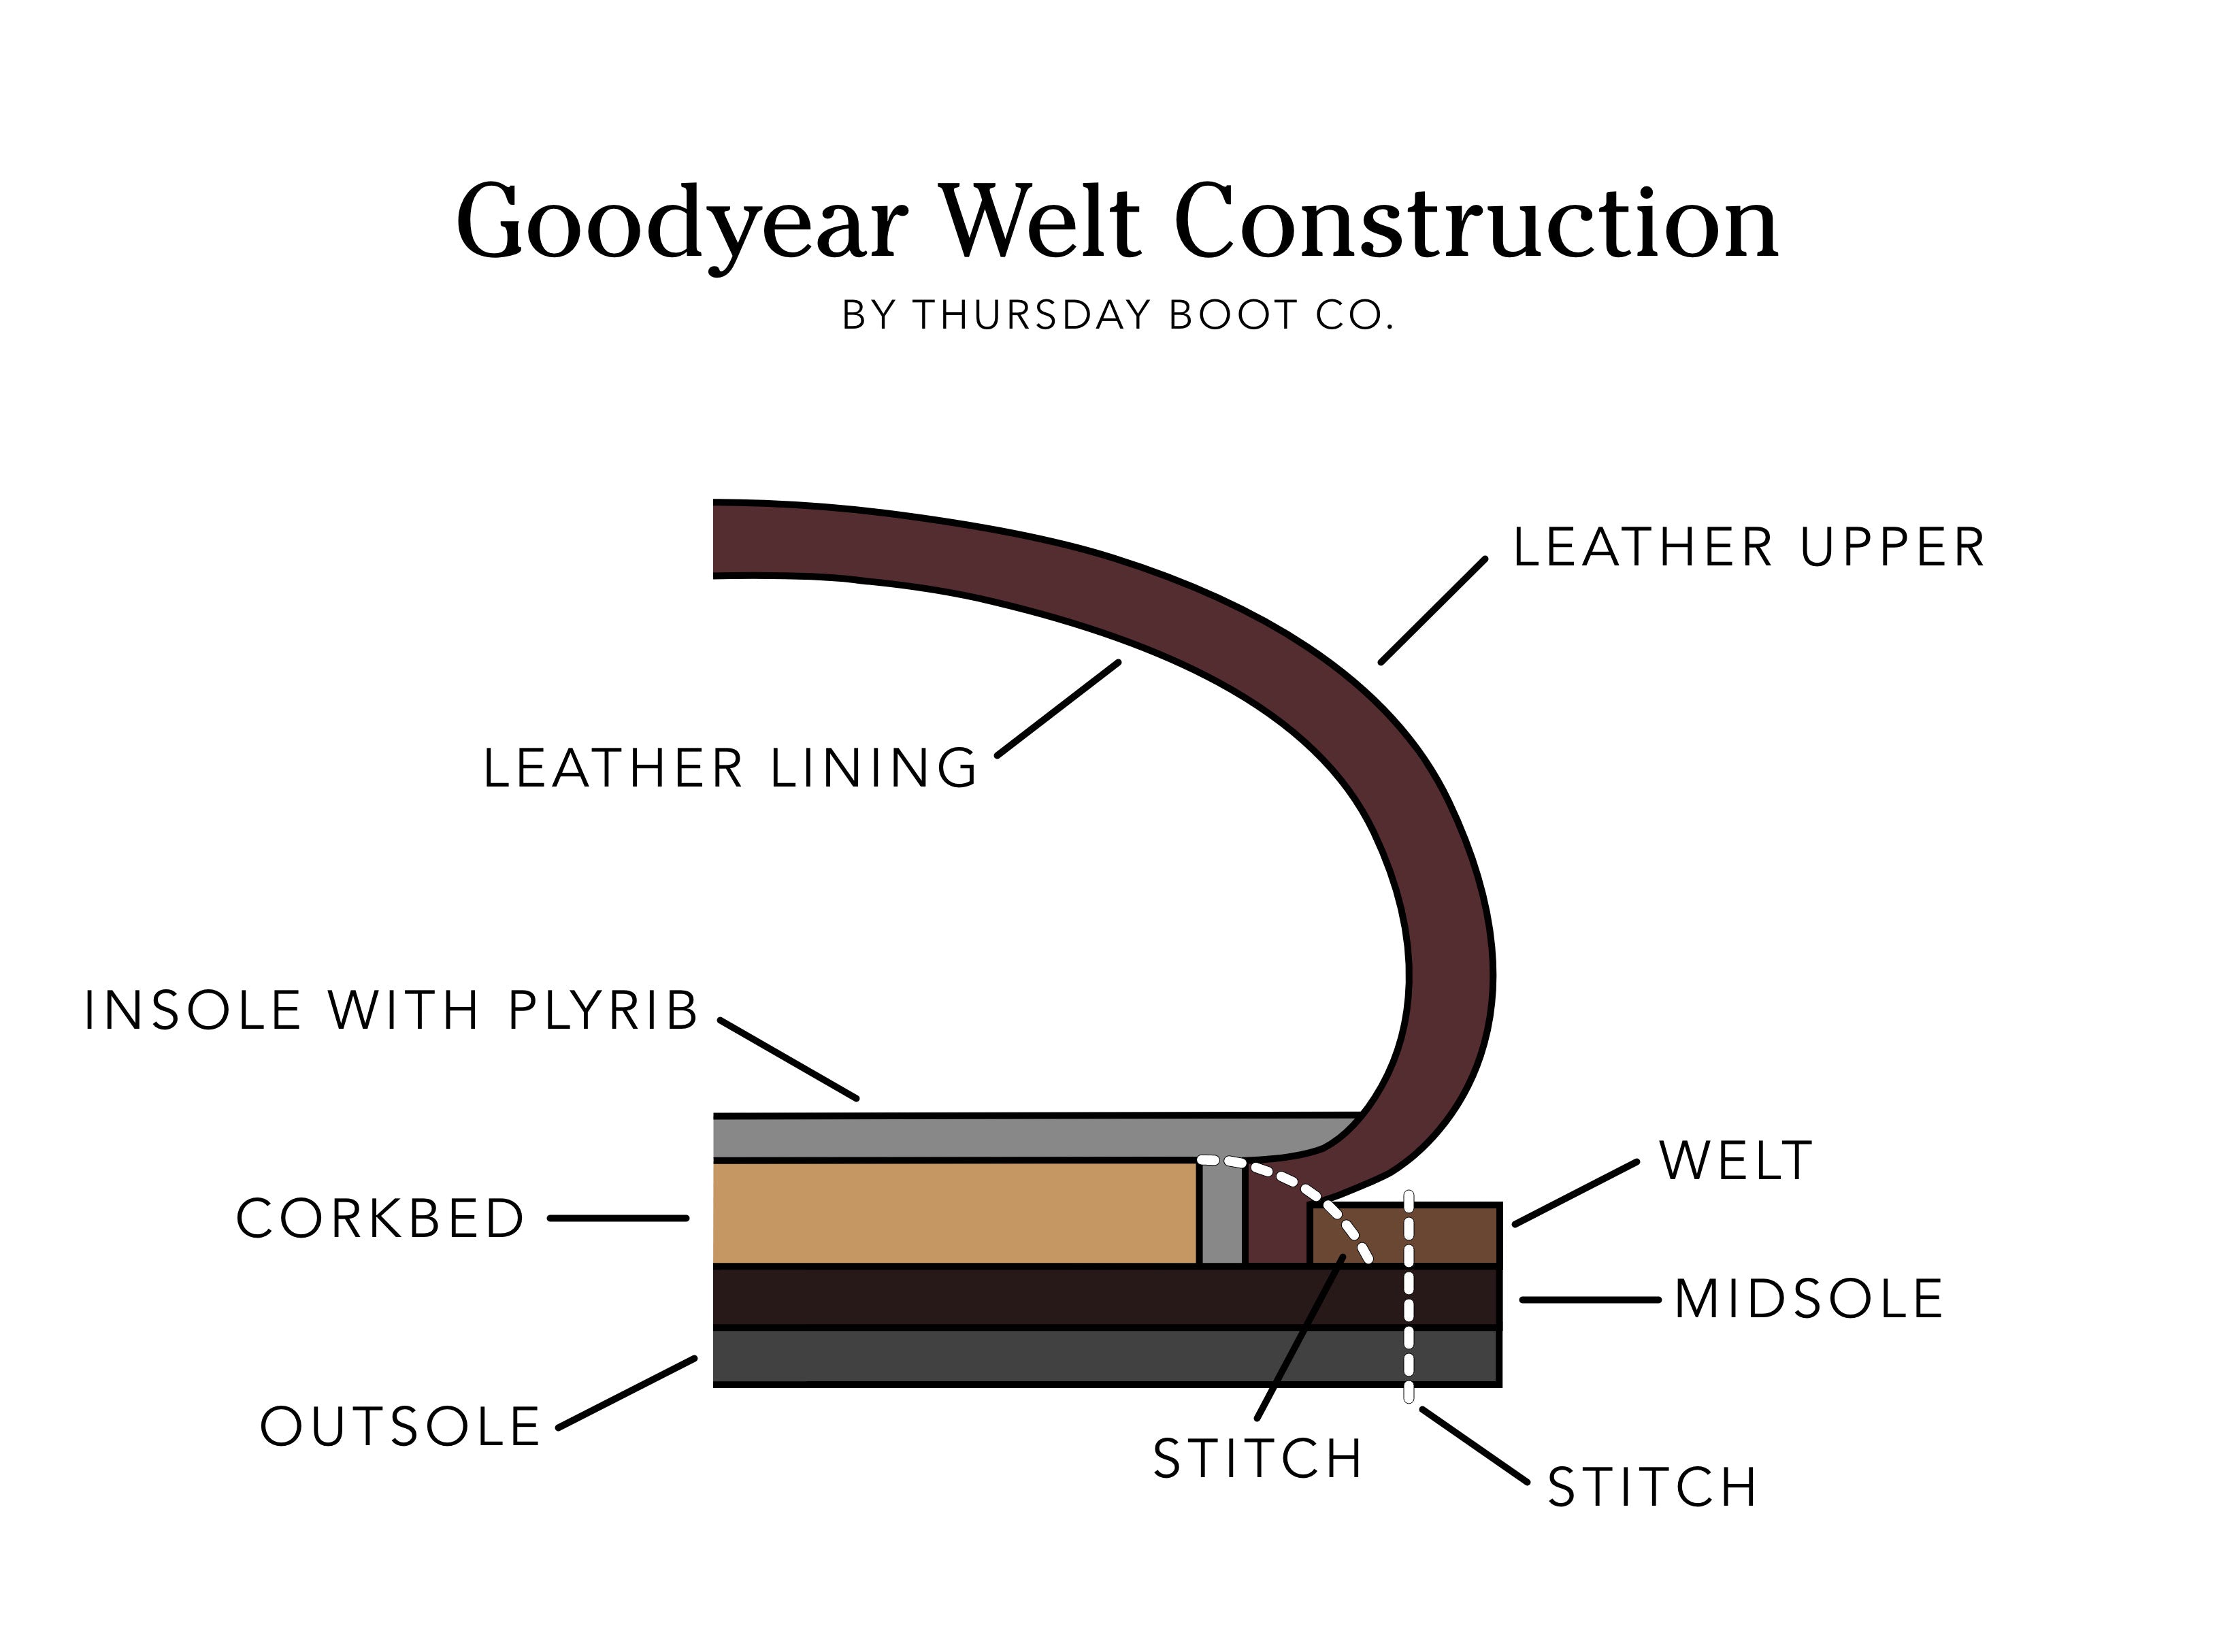 Goodyear Welt Construction: Are Goodyear Welt Boots Better?